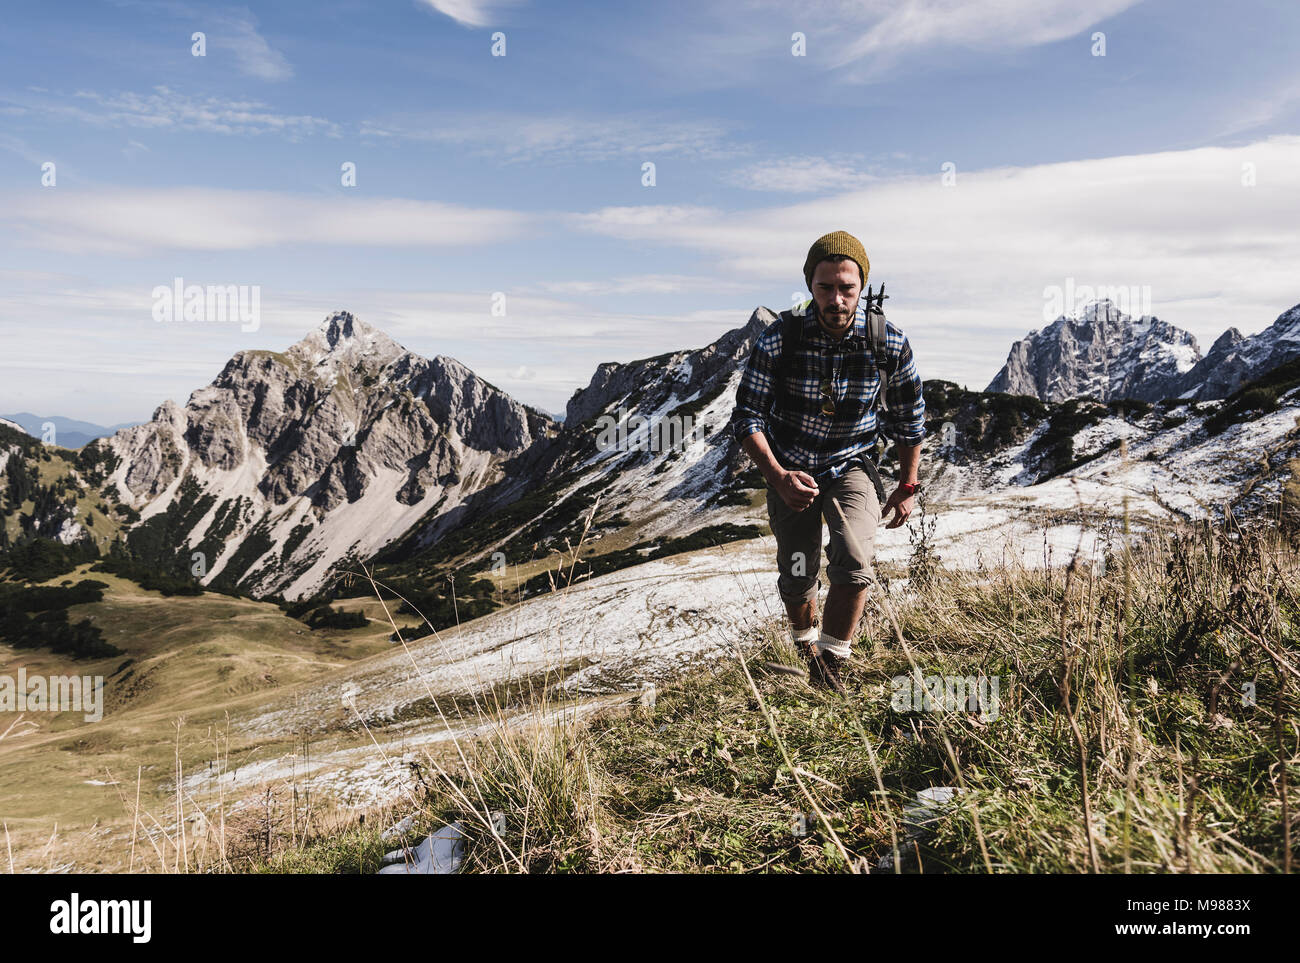 Autriche, Tyrol, jeune homme randonnée en montagne Banque D'Images